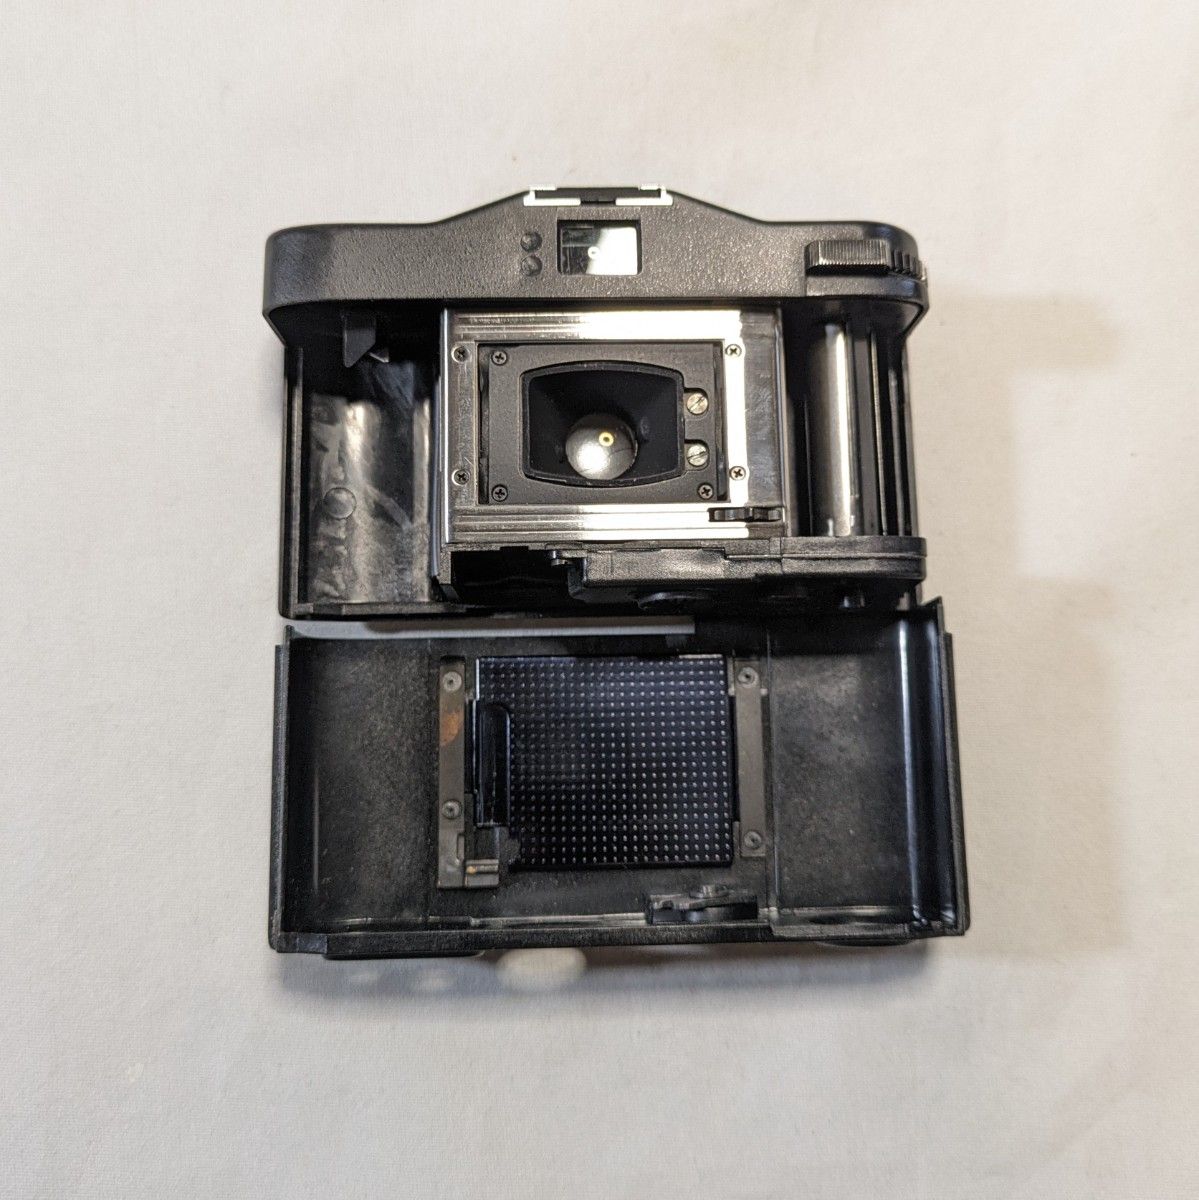 【実写確認済】Minox 35 EL 超小型フィルムカメラ